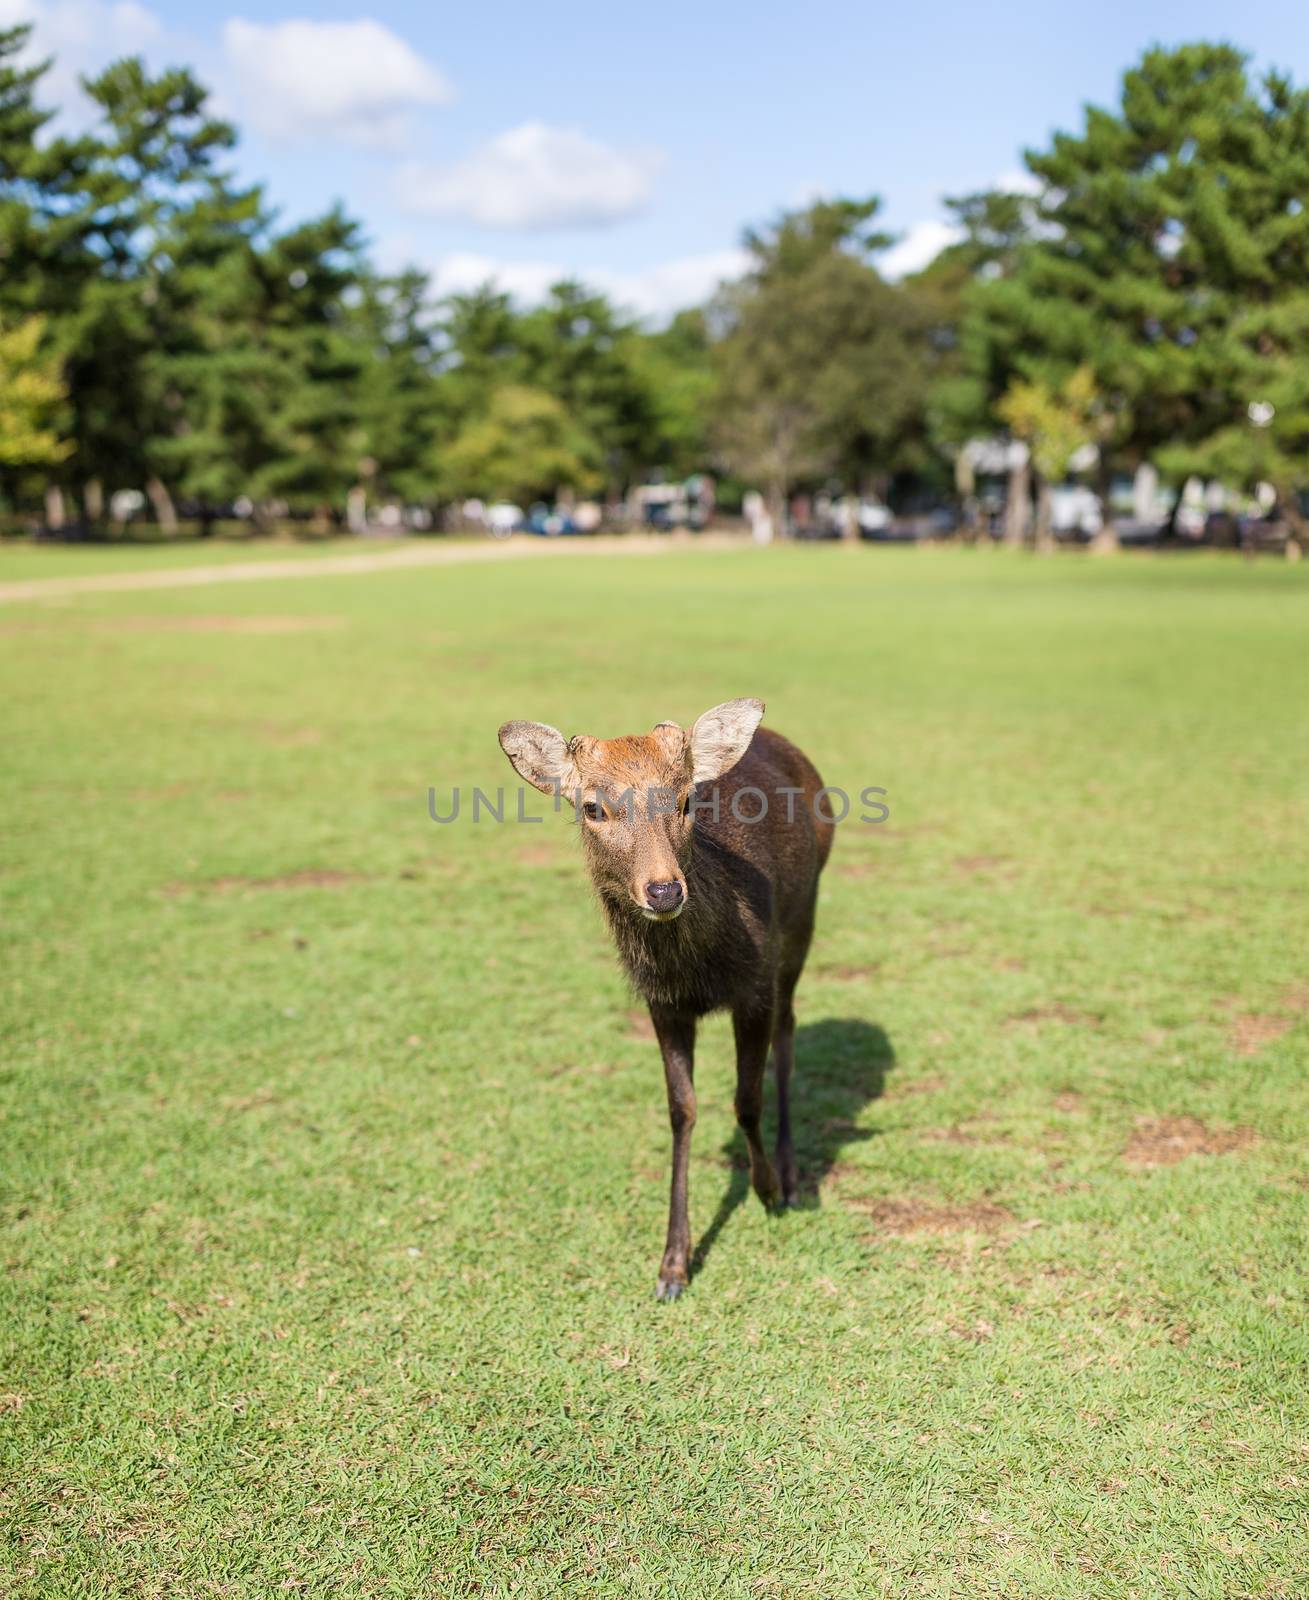 Deer walking in the park by leungchopan